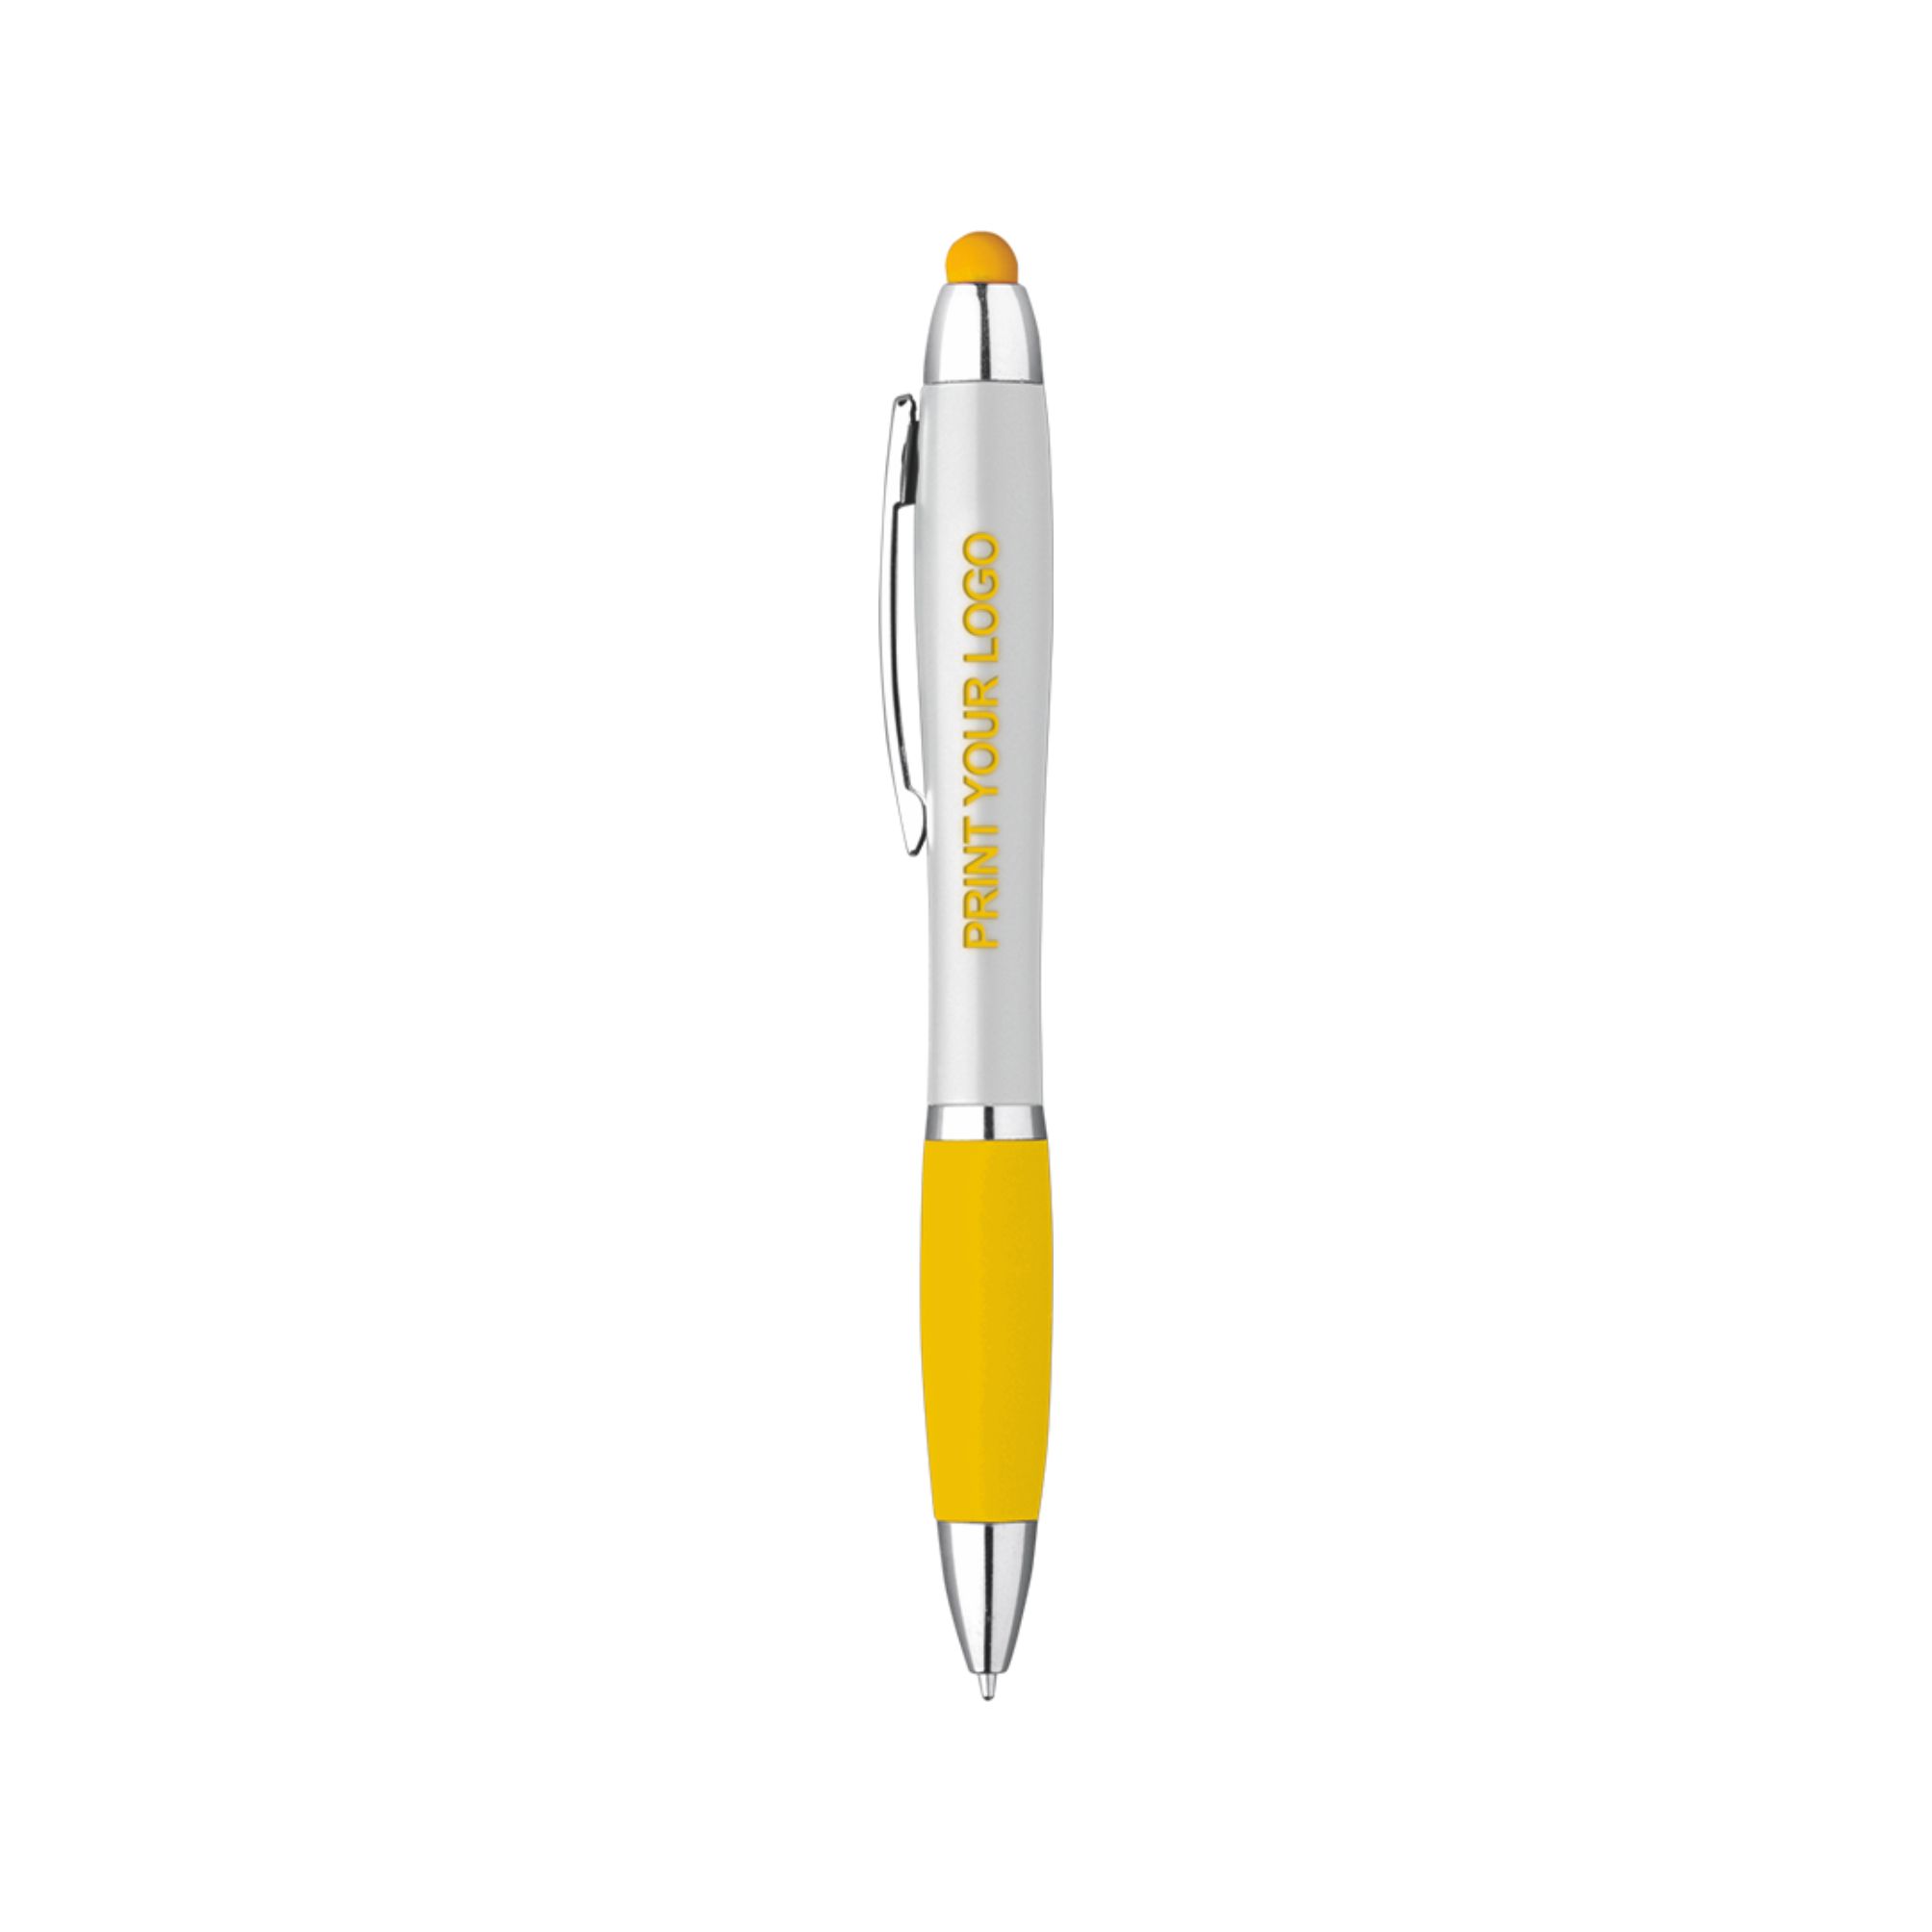 5233-neon-white-penna-sfera-touch-con-led-giallo.jpg